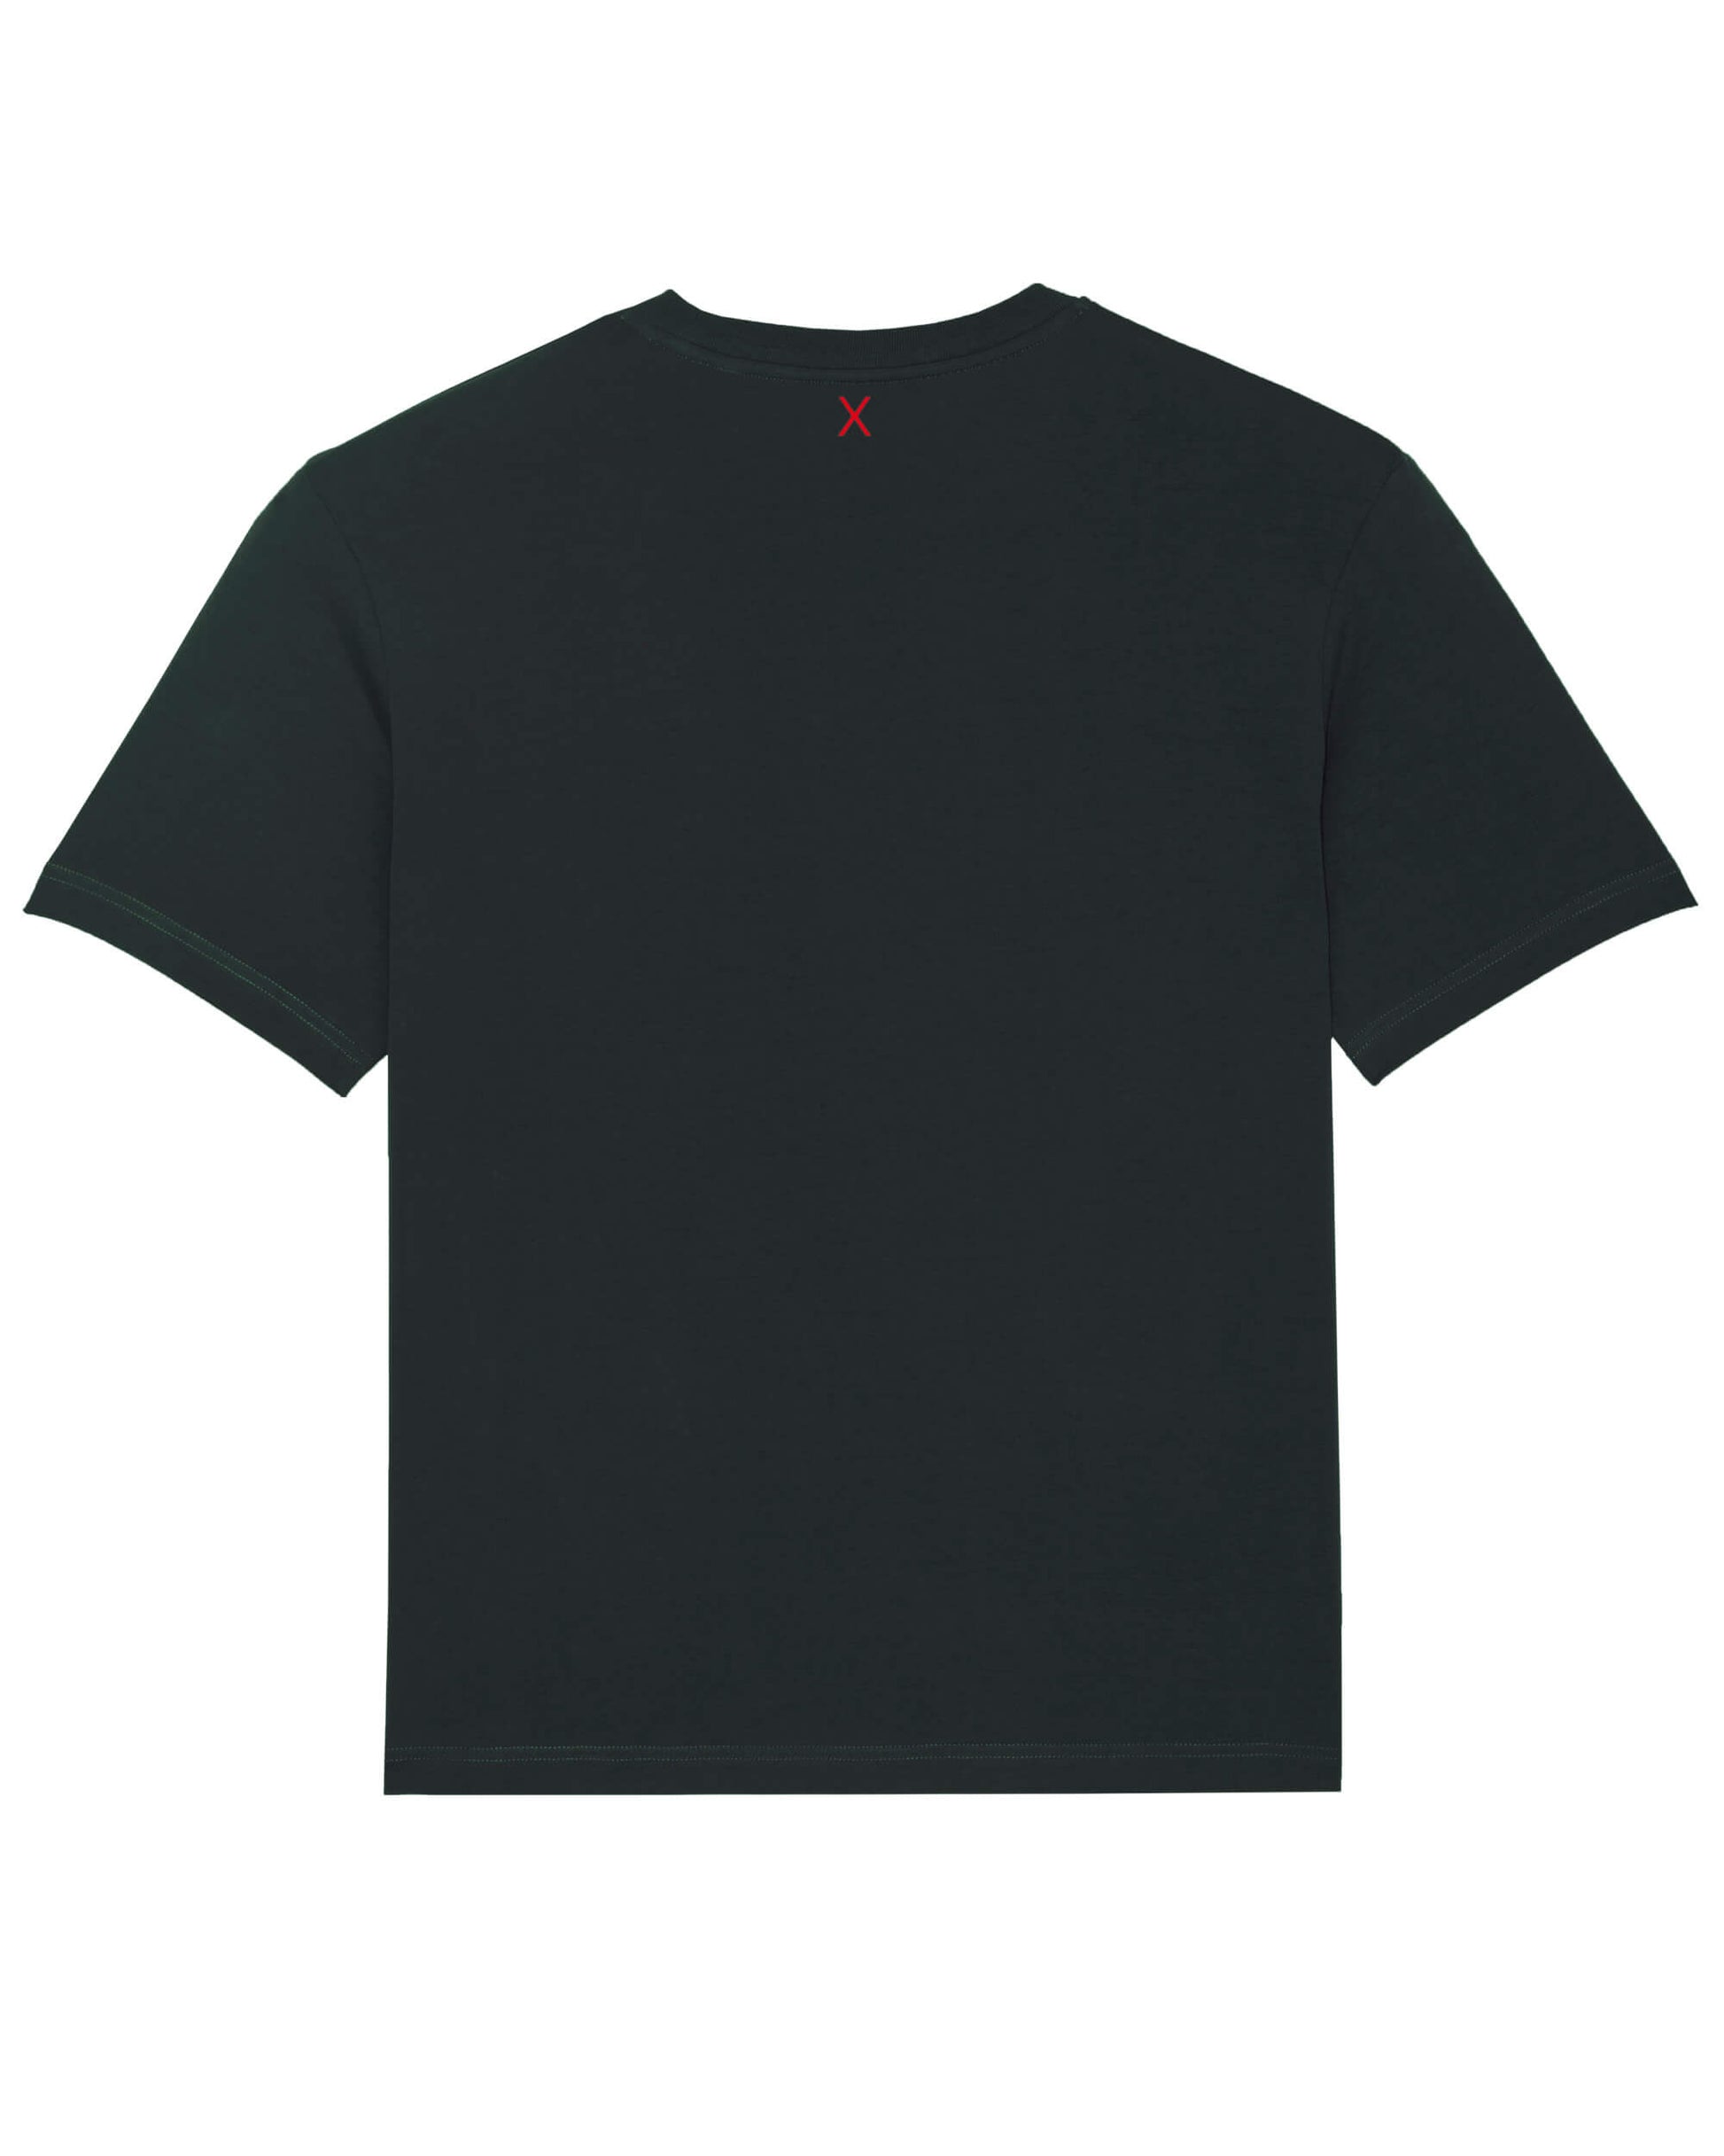 Produktbild eines schwarzen T-Shirts (Rückseite). Mittig, direkt unter dem Nackensaum ist das ikonische Extra "X" in rot.